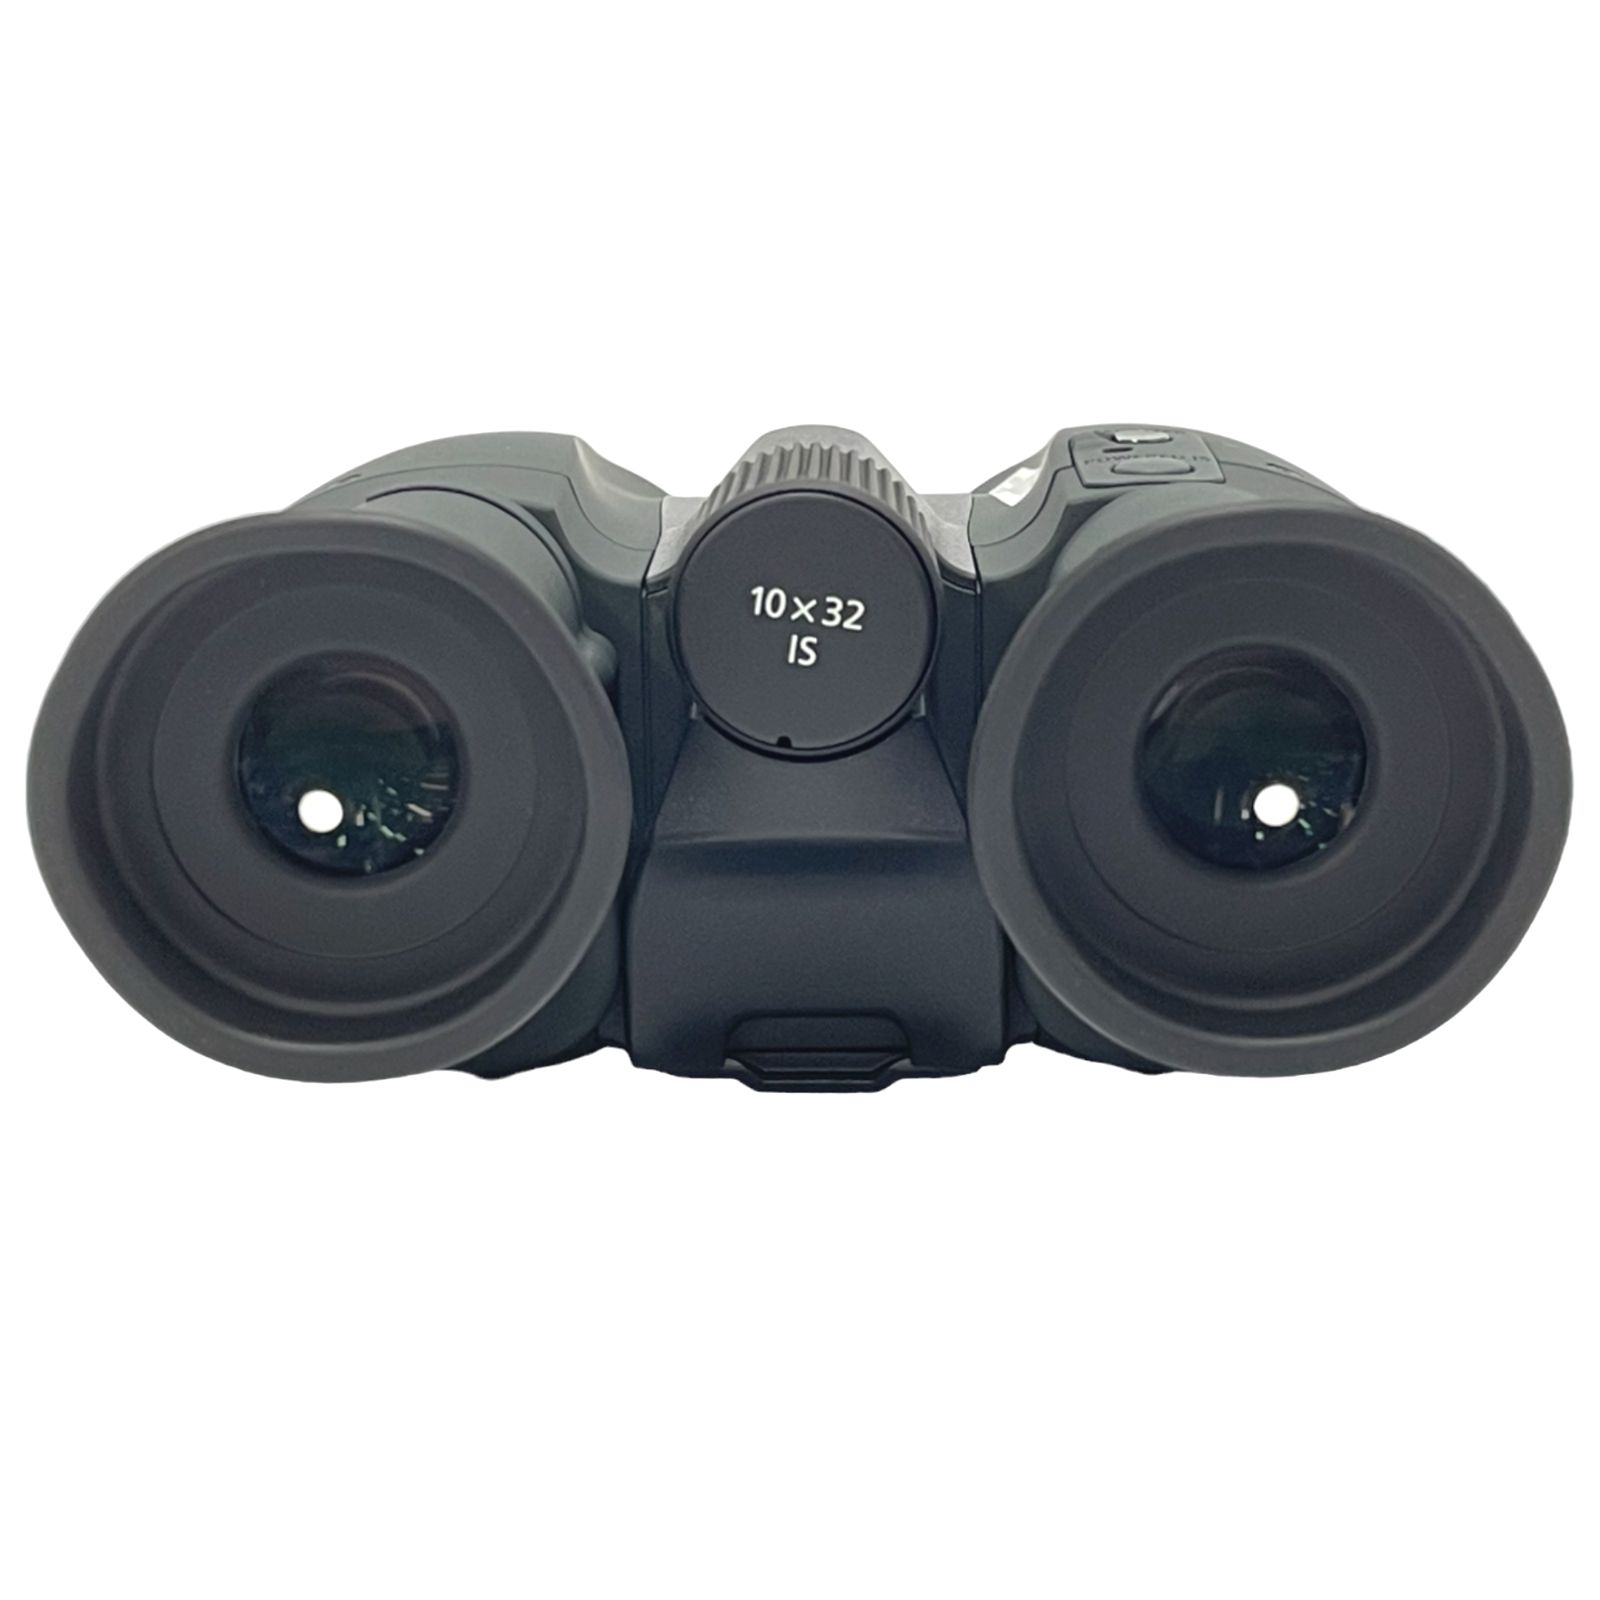 キヤノン防振双眼鏡 10×32IS - カメラ